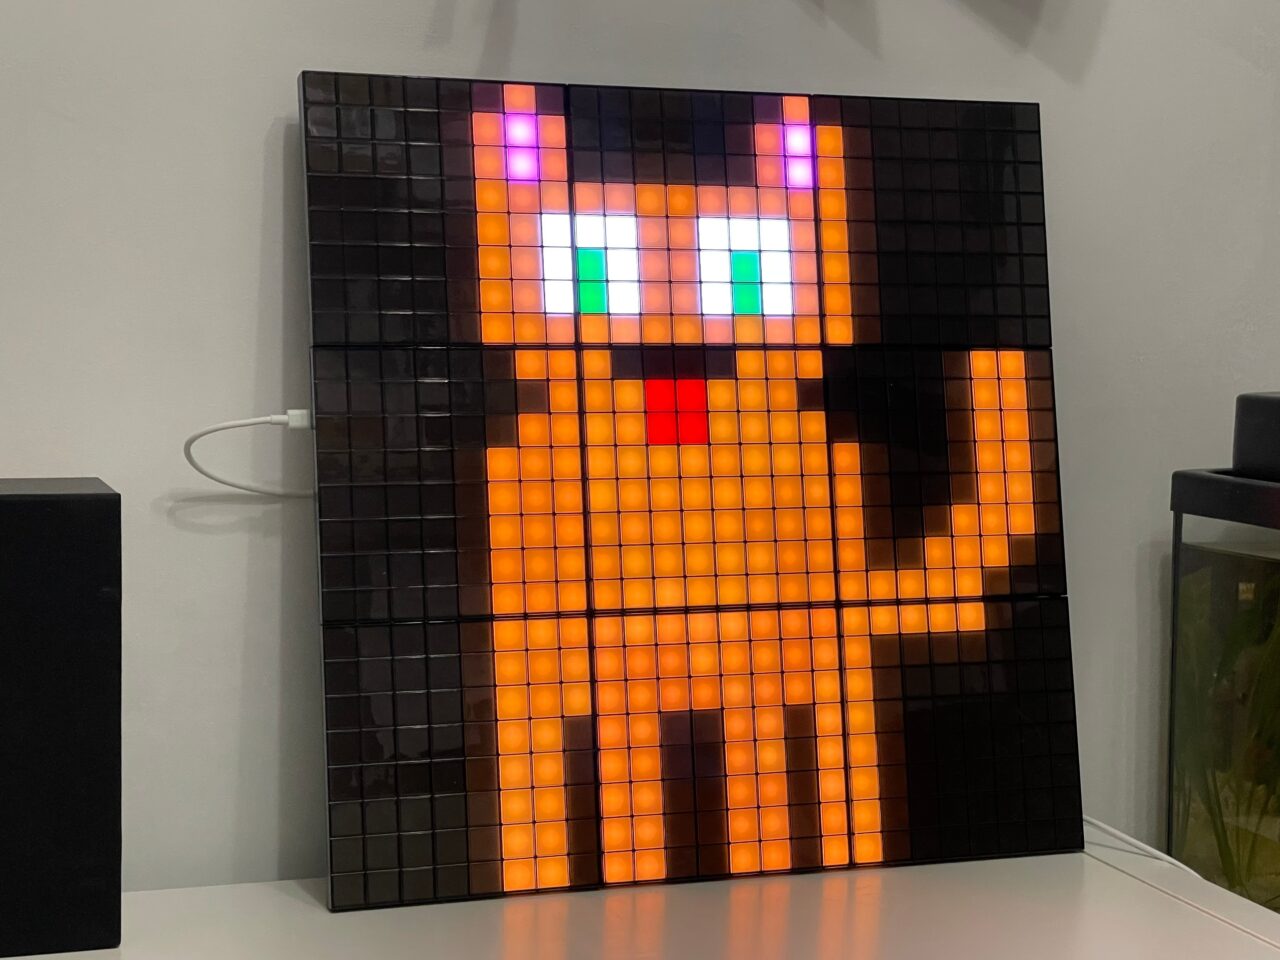 Cyfrowa, pikselowa reprezentacja kota w pomarańczowej i czarnej kolorystyce na kwadratowym, podświetlanym panelu LED zamontowanym na ścianie.